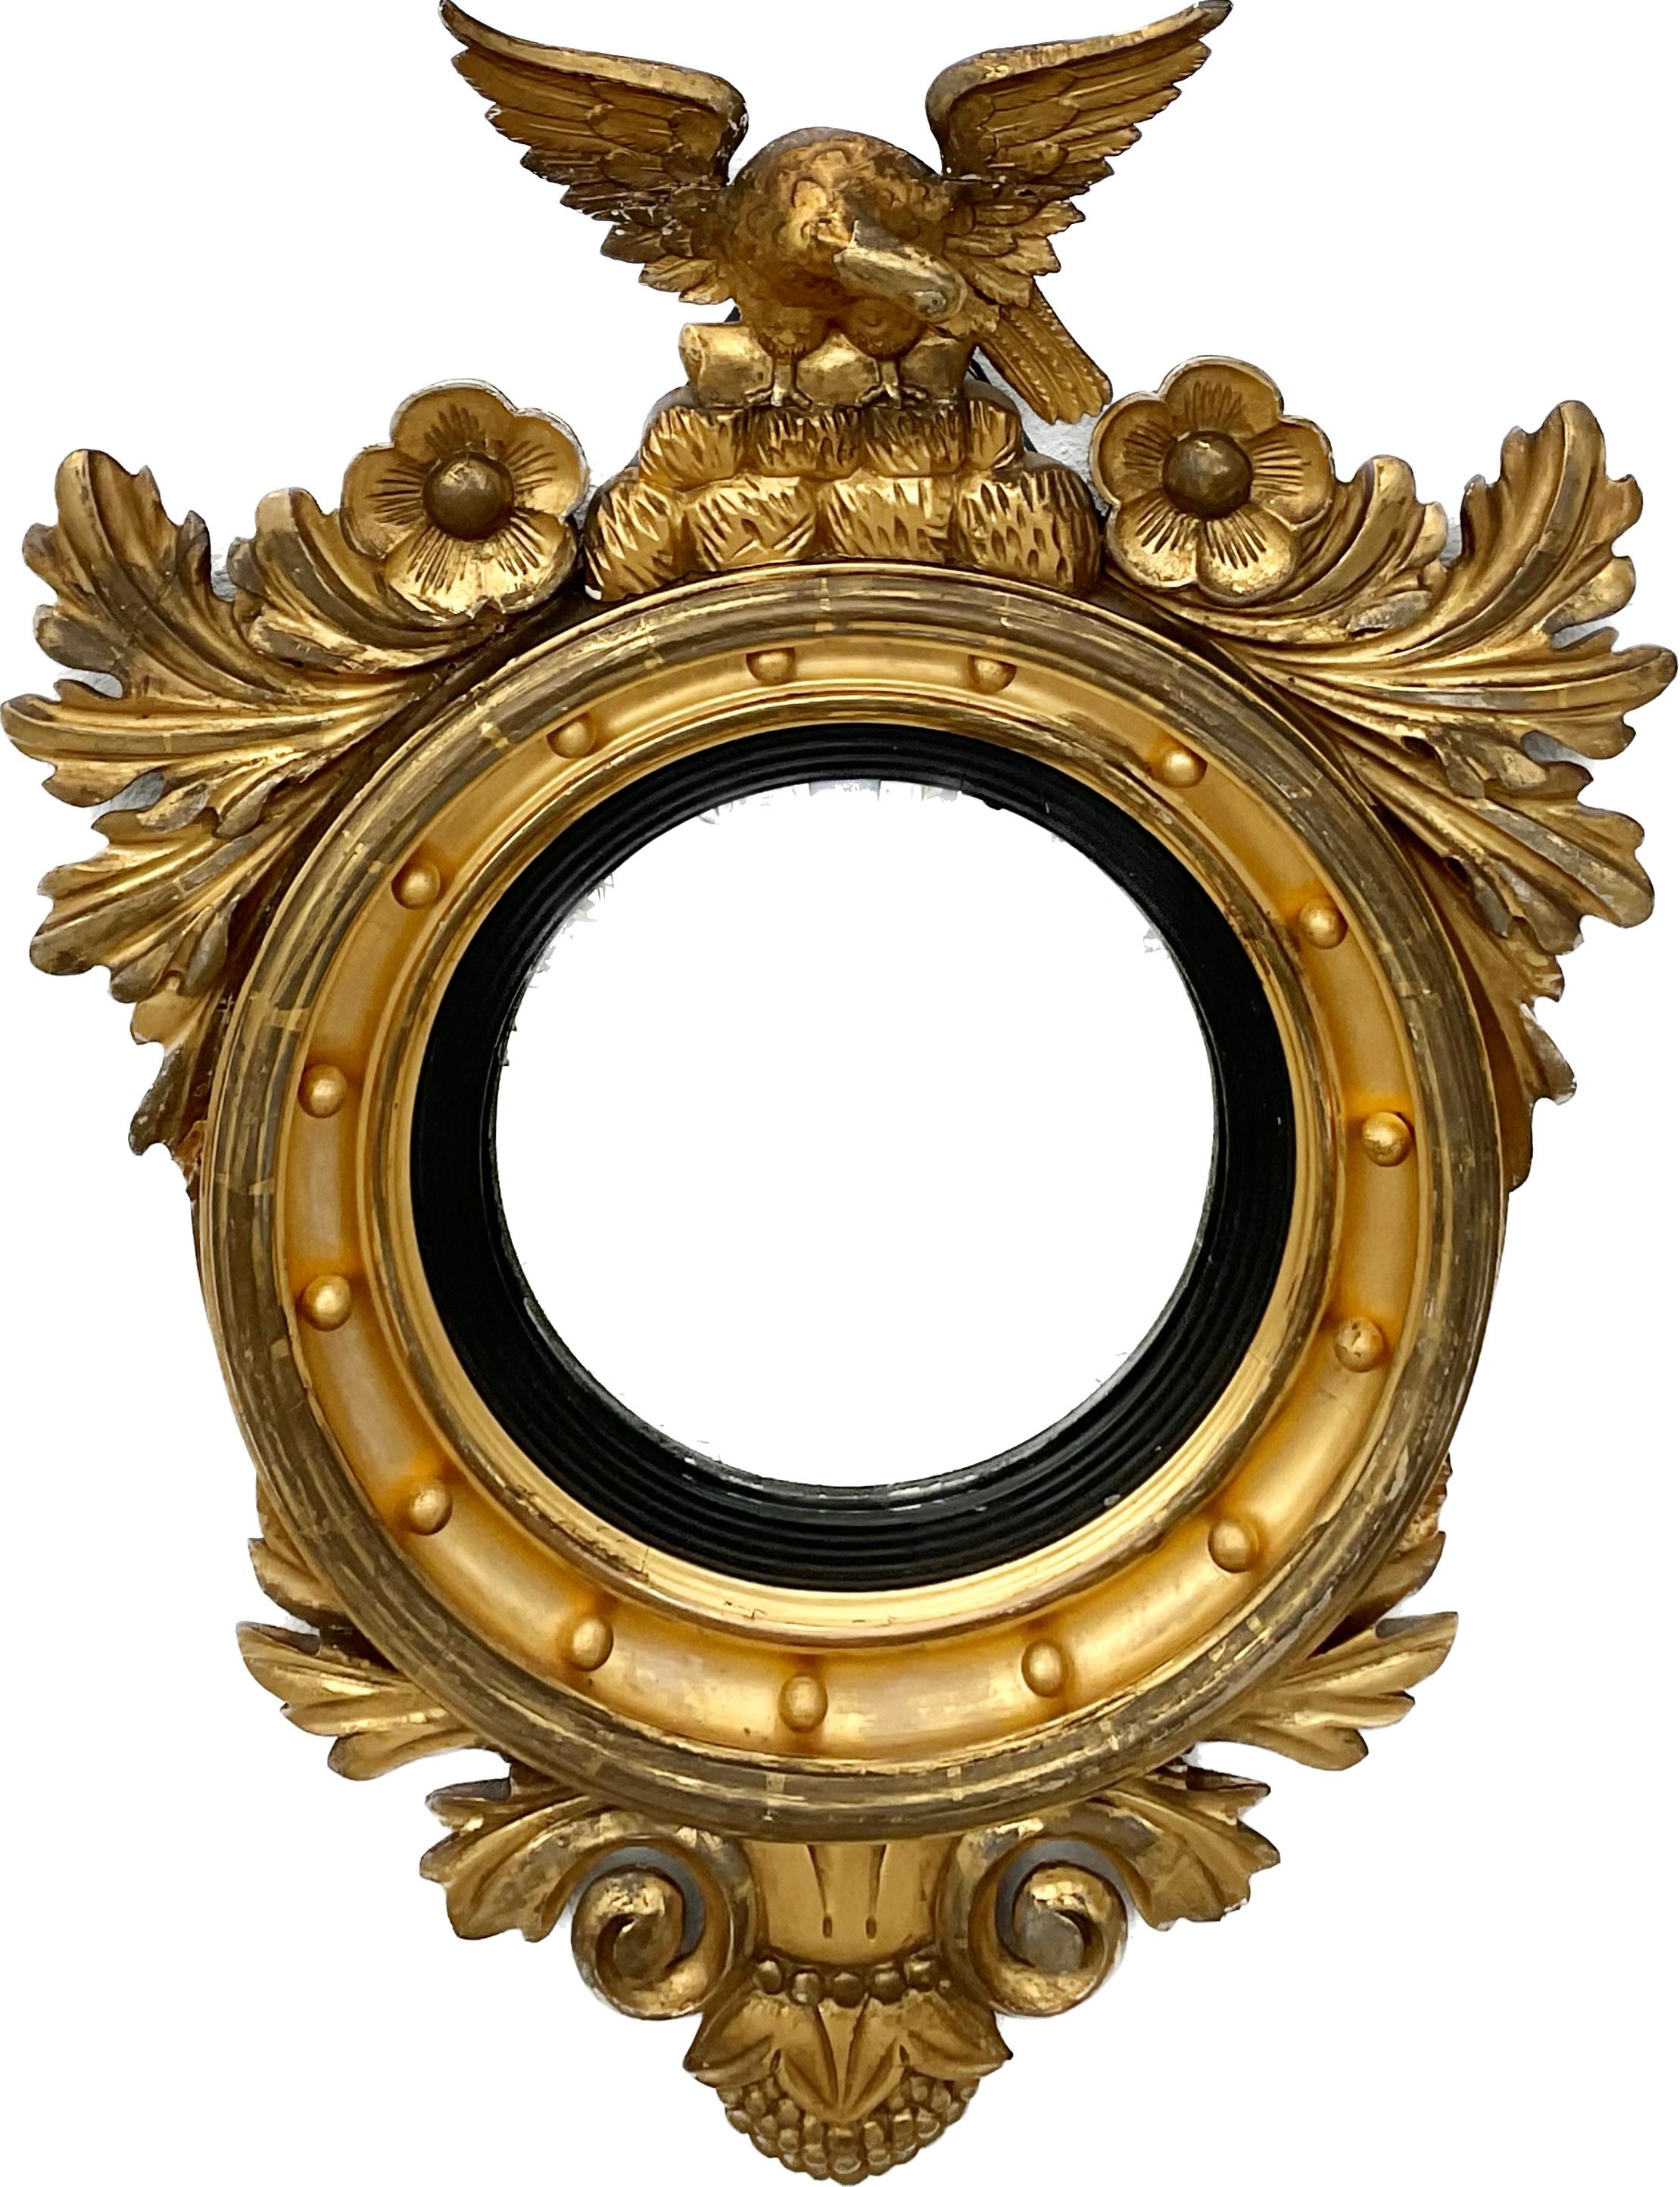 19. Jahrhundert Federal Eagle Runde vergoldeten Holzrahmen Spiegel. Der Rahmen besteht aus 15 runden Kugeln, die von Girlanden und Blumen umrahmt sind, und einem Adler mit weit ausgebreiteten Flügeln an der Spitze des Rahmens. 